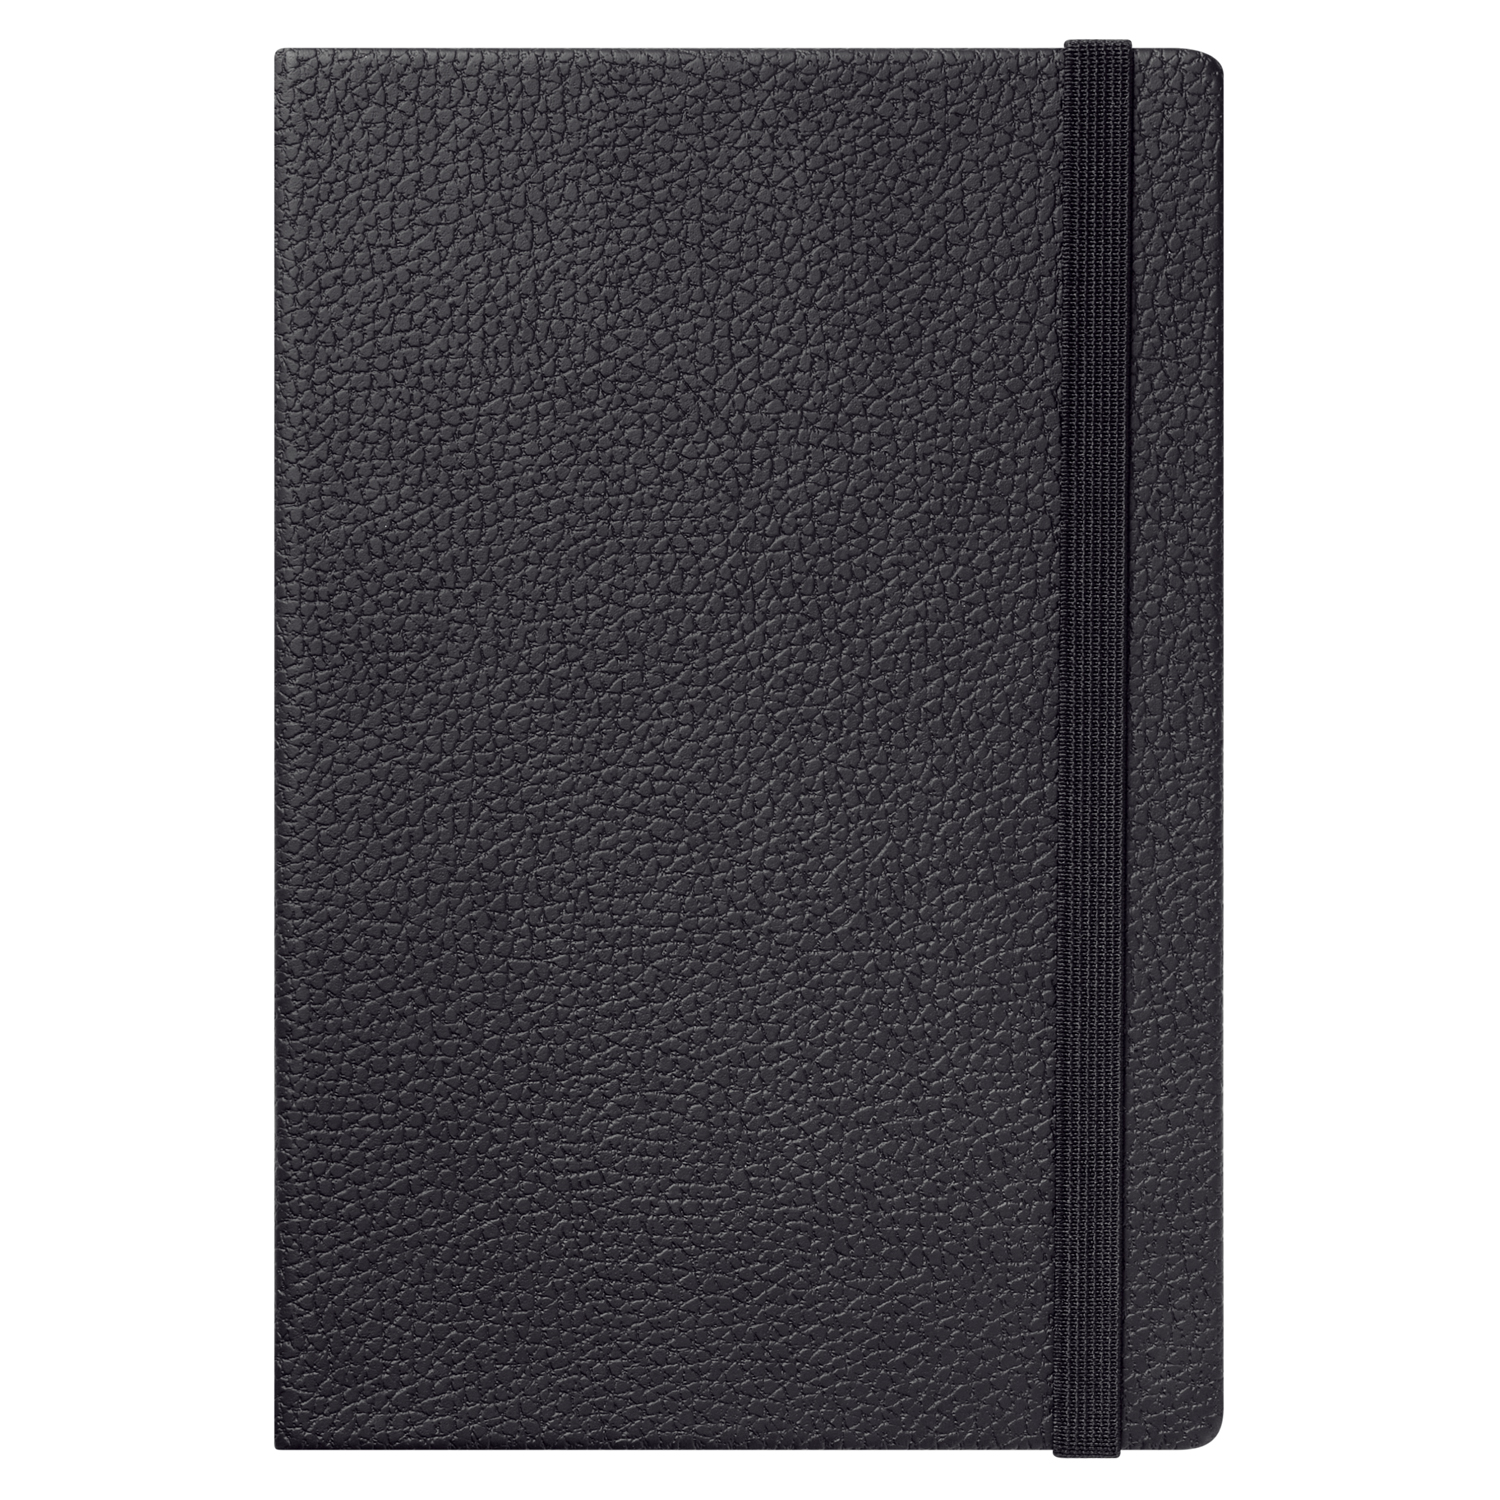 Ежедневник Dallas Btobook недатированный, черный (без упаковки, без стикера)